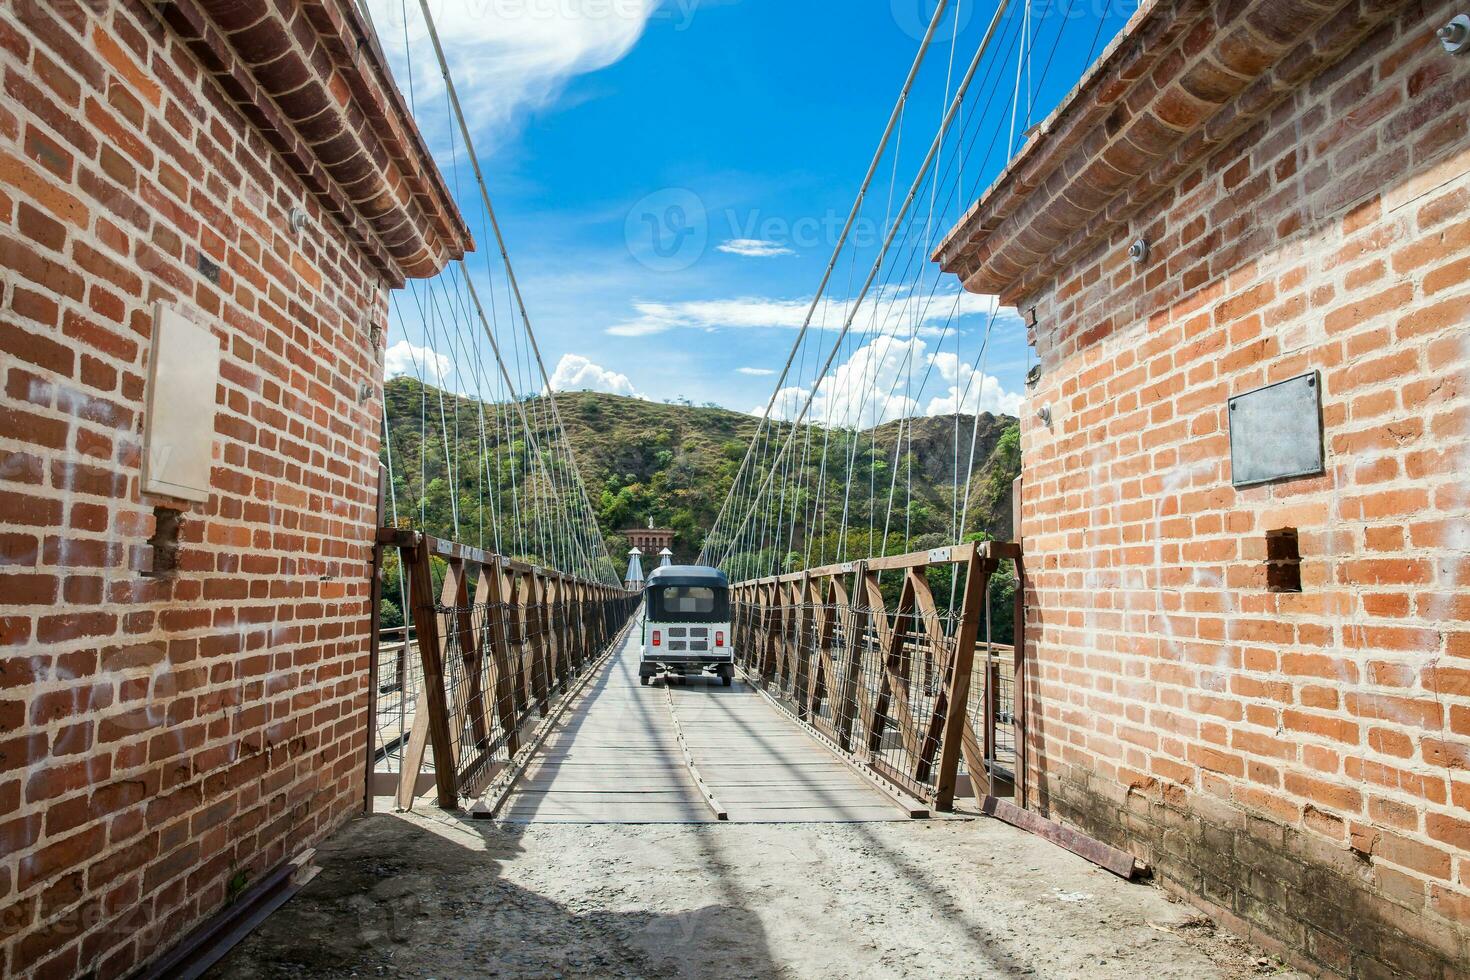 das historisch Brücke von das Westen ein ein Suspension Brücke erklärt kolumbianisch National Monument gebaut im 1887 Über das cauca Fluss foto